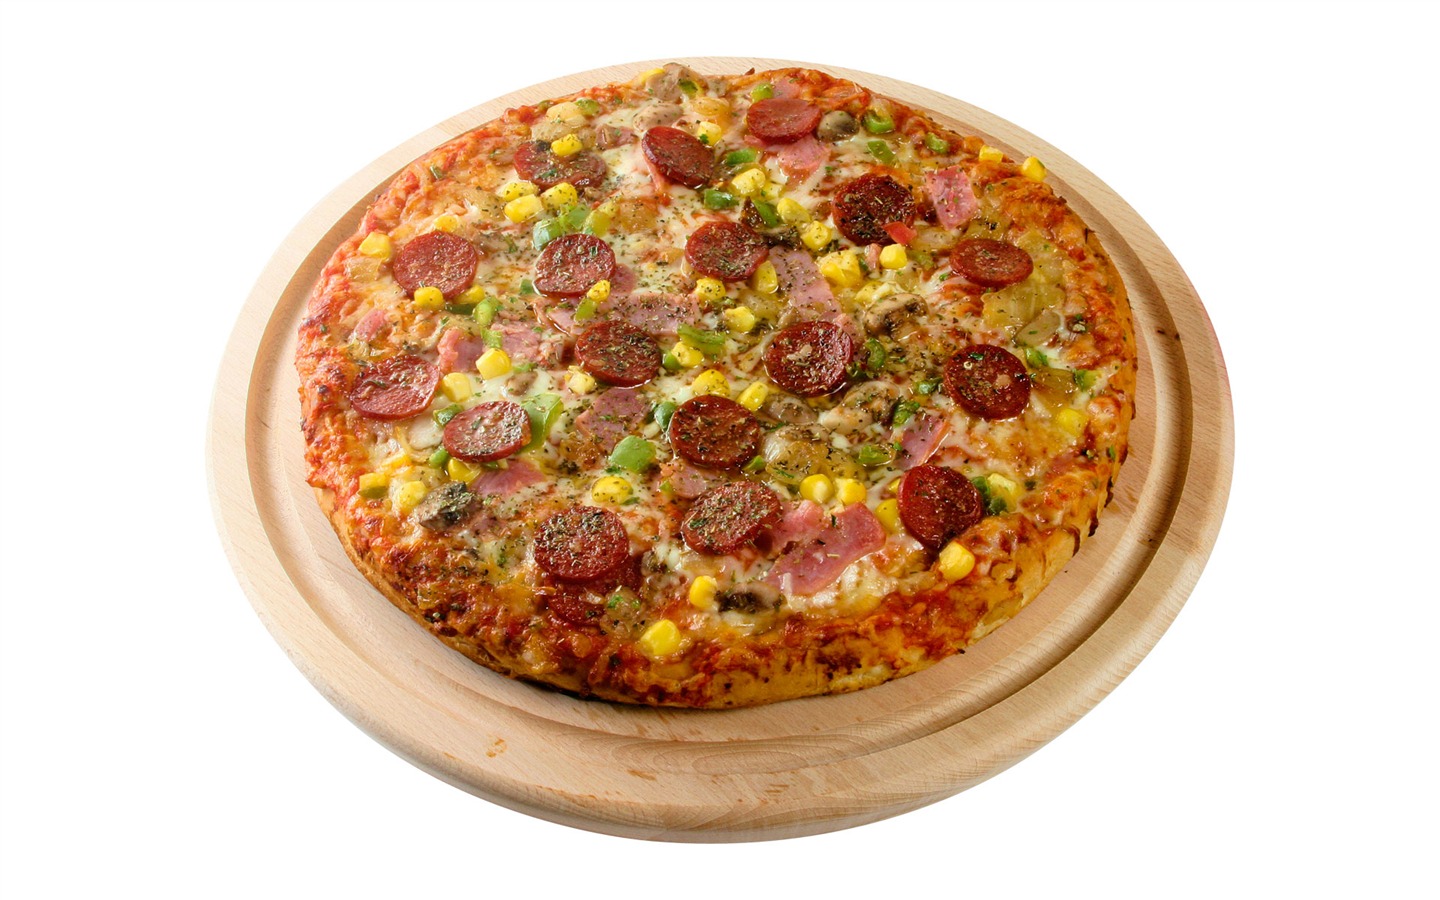 Fondos de pizzerías de Alimentos (3) #18 - 1440x900